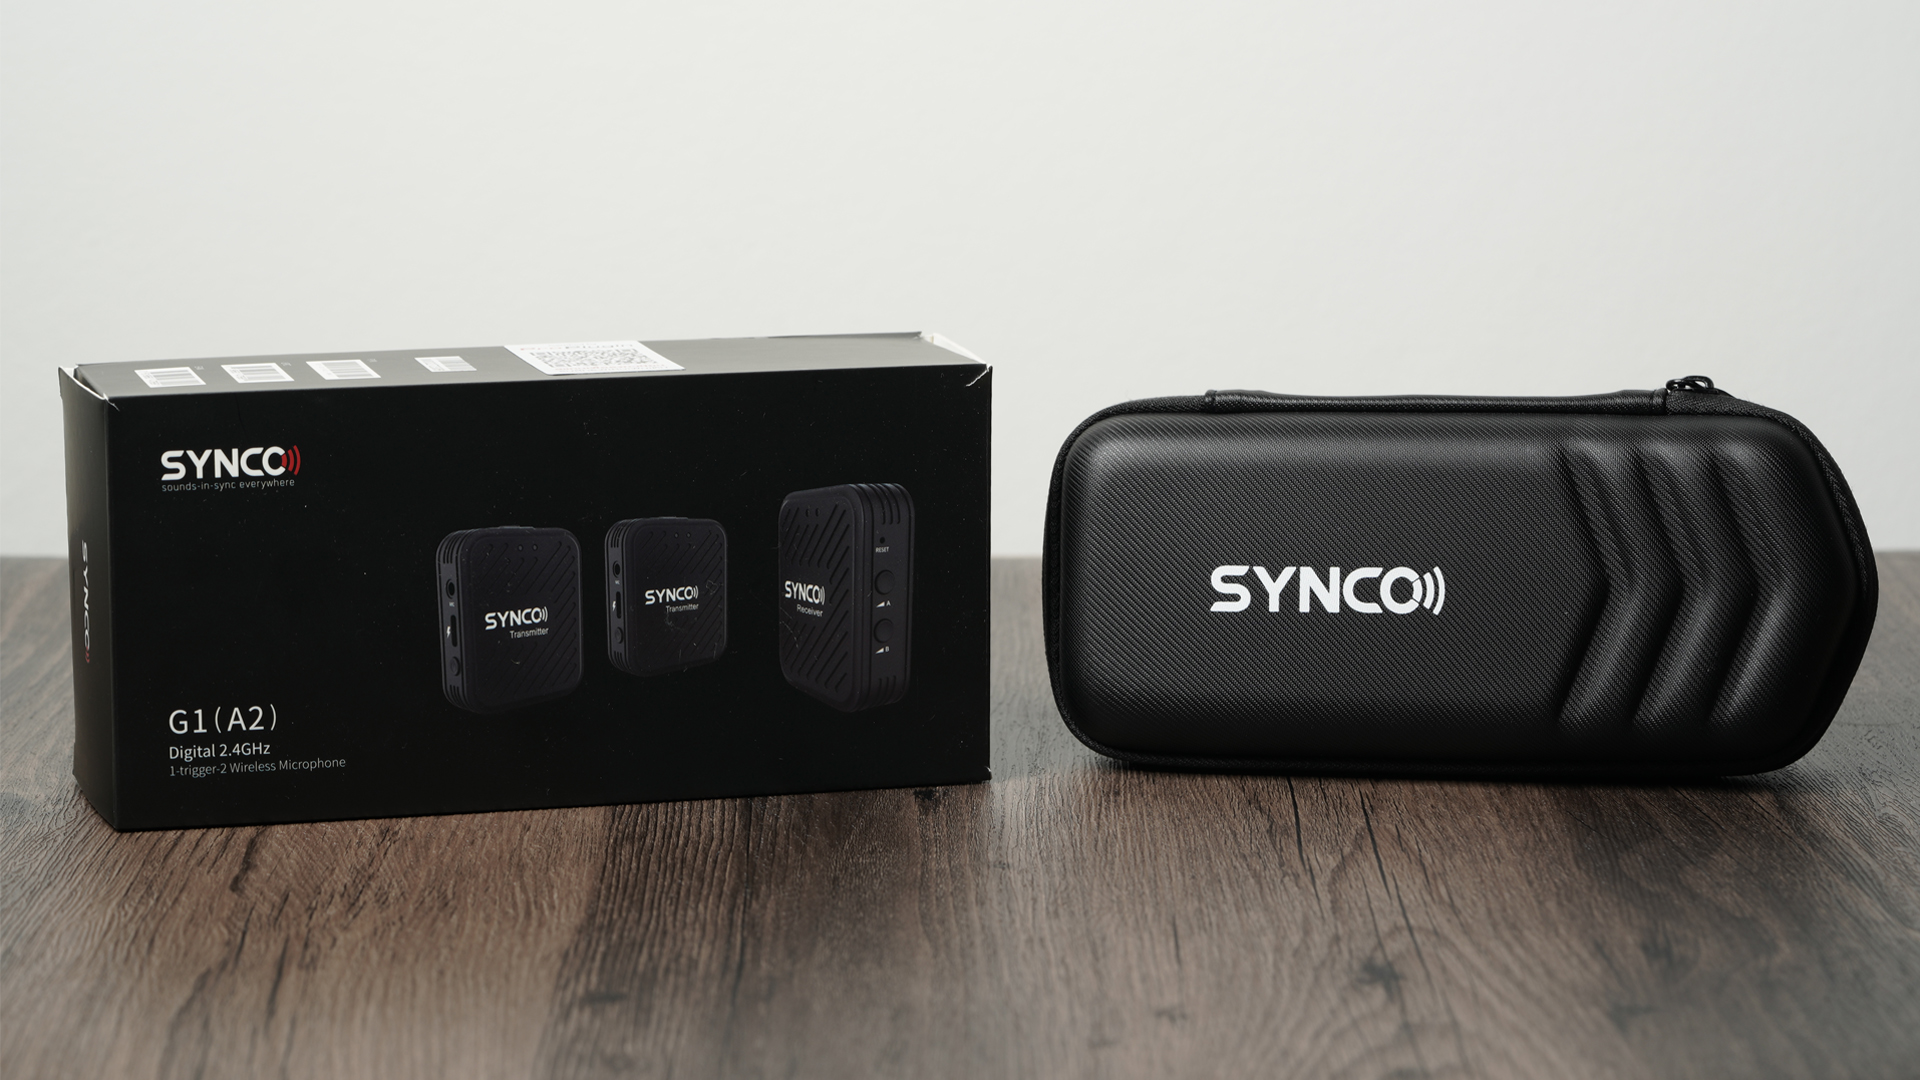 ทดสอบ Wireless Microphone Synco ที่ราคาไม่ถึง 4,000 บาท